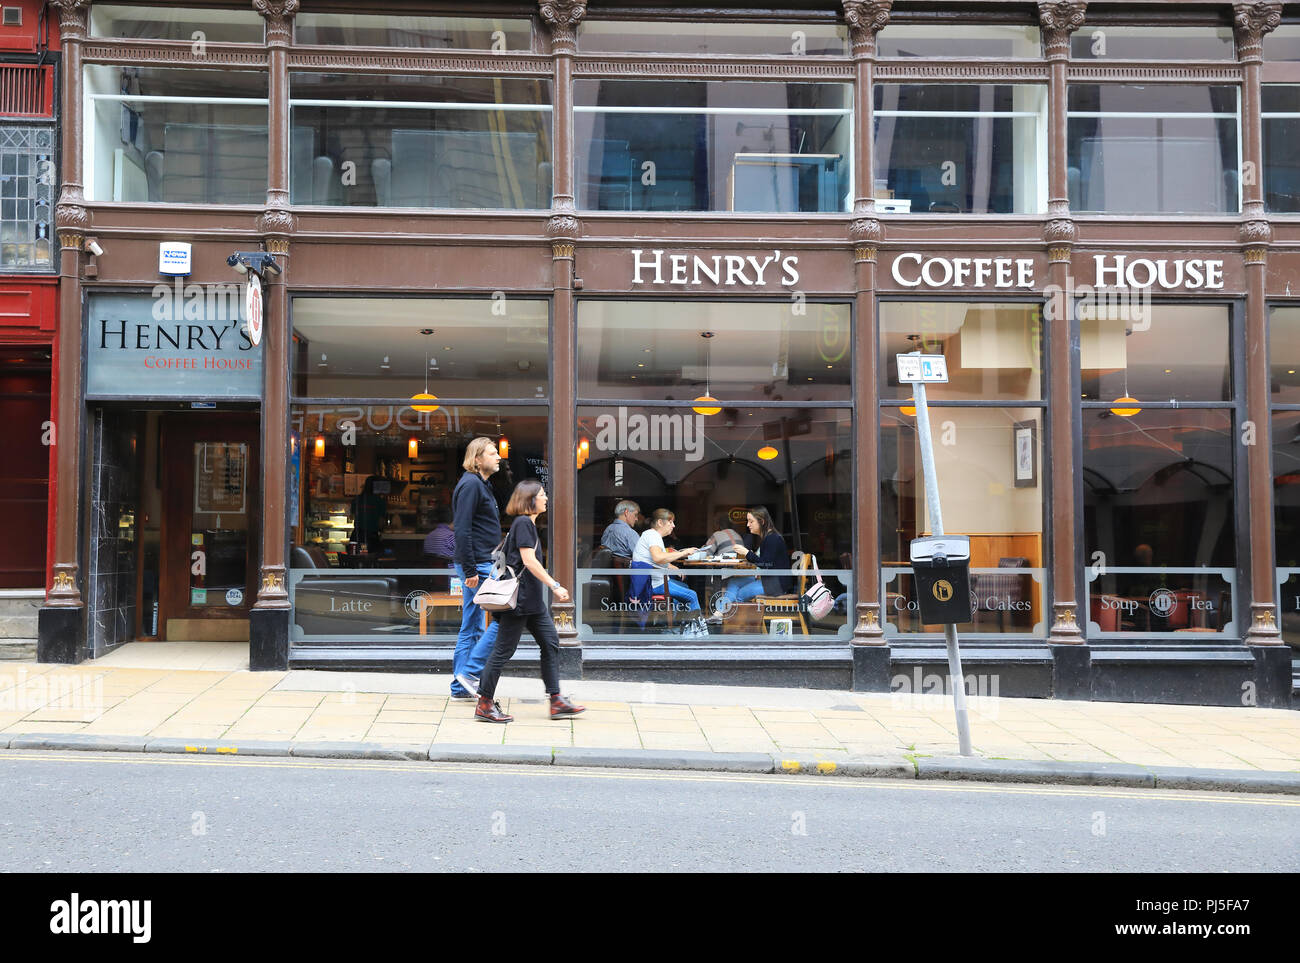 Quartier branché de Henry's Coffee House sur Seagate en centre de Dundee, en Ecosse, Royaume-Uni Banque D'Images